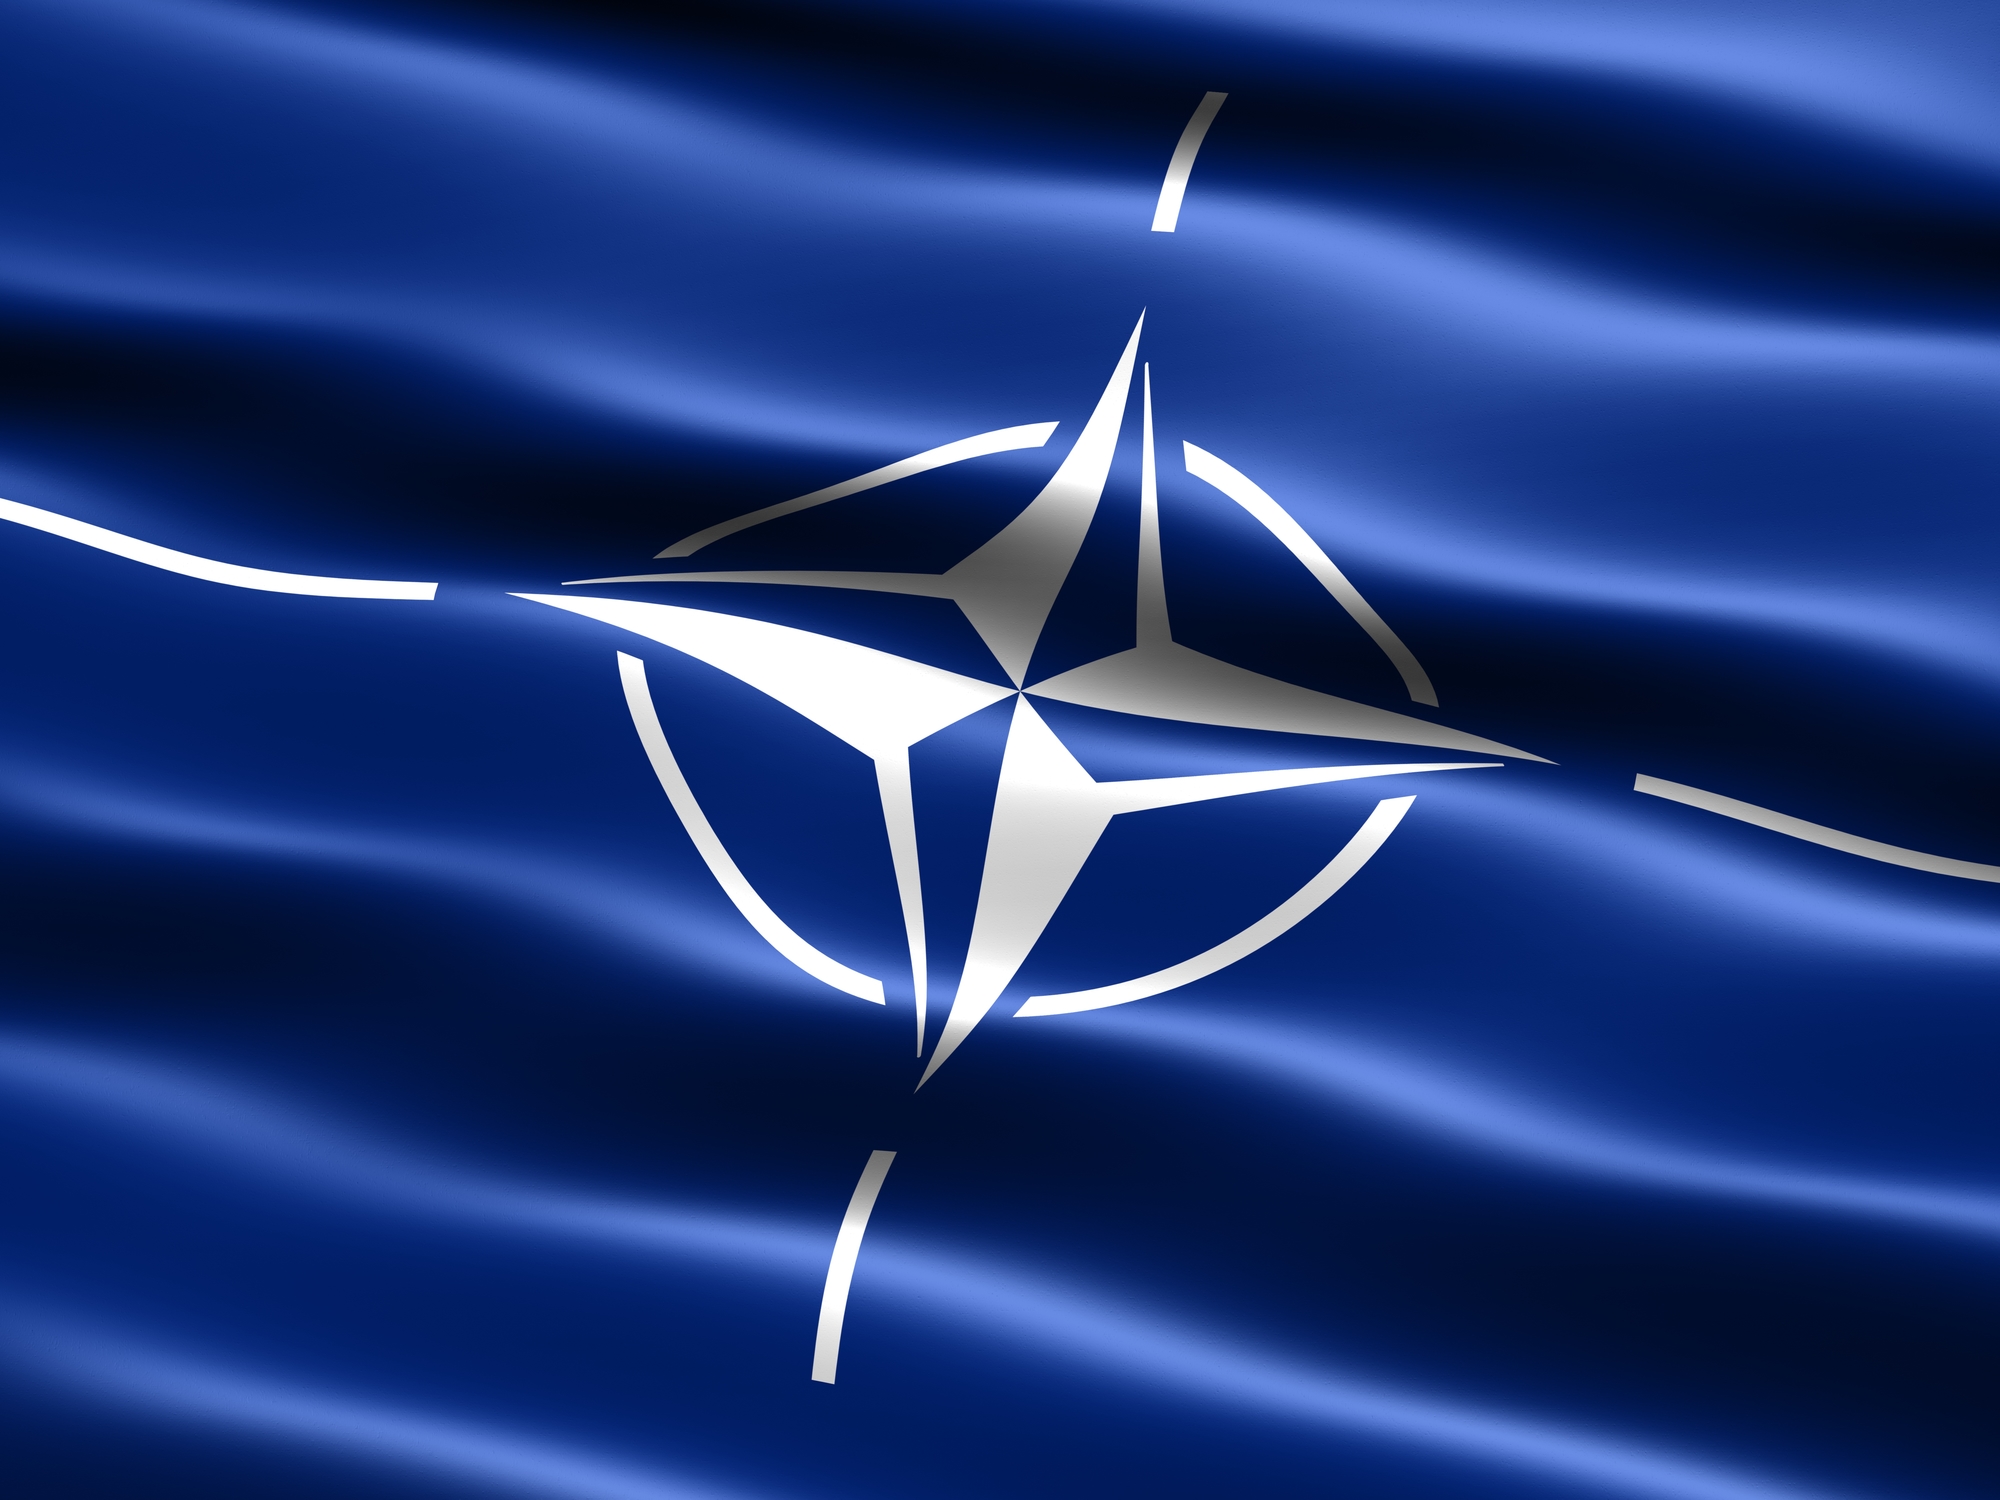 A NATO elsődleges célja, hogy az egészségügyi krízis ne váljon biztonságot érintő válsággá